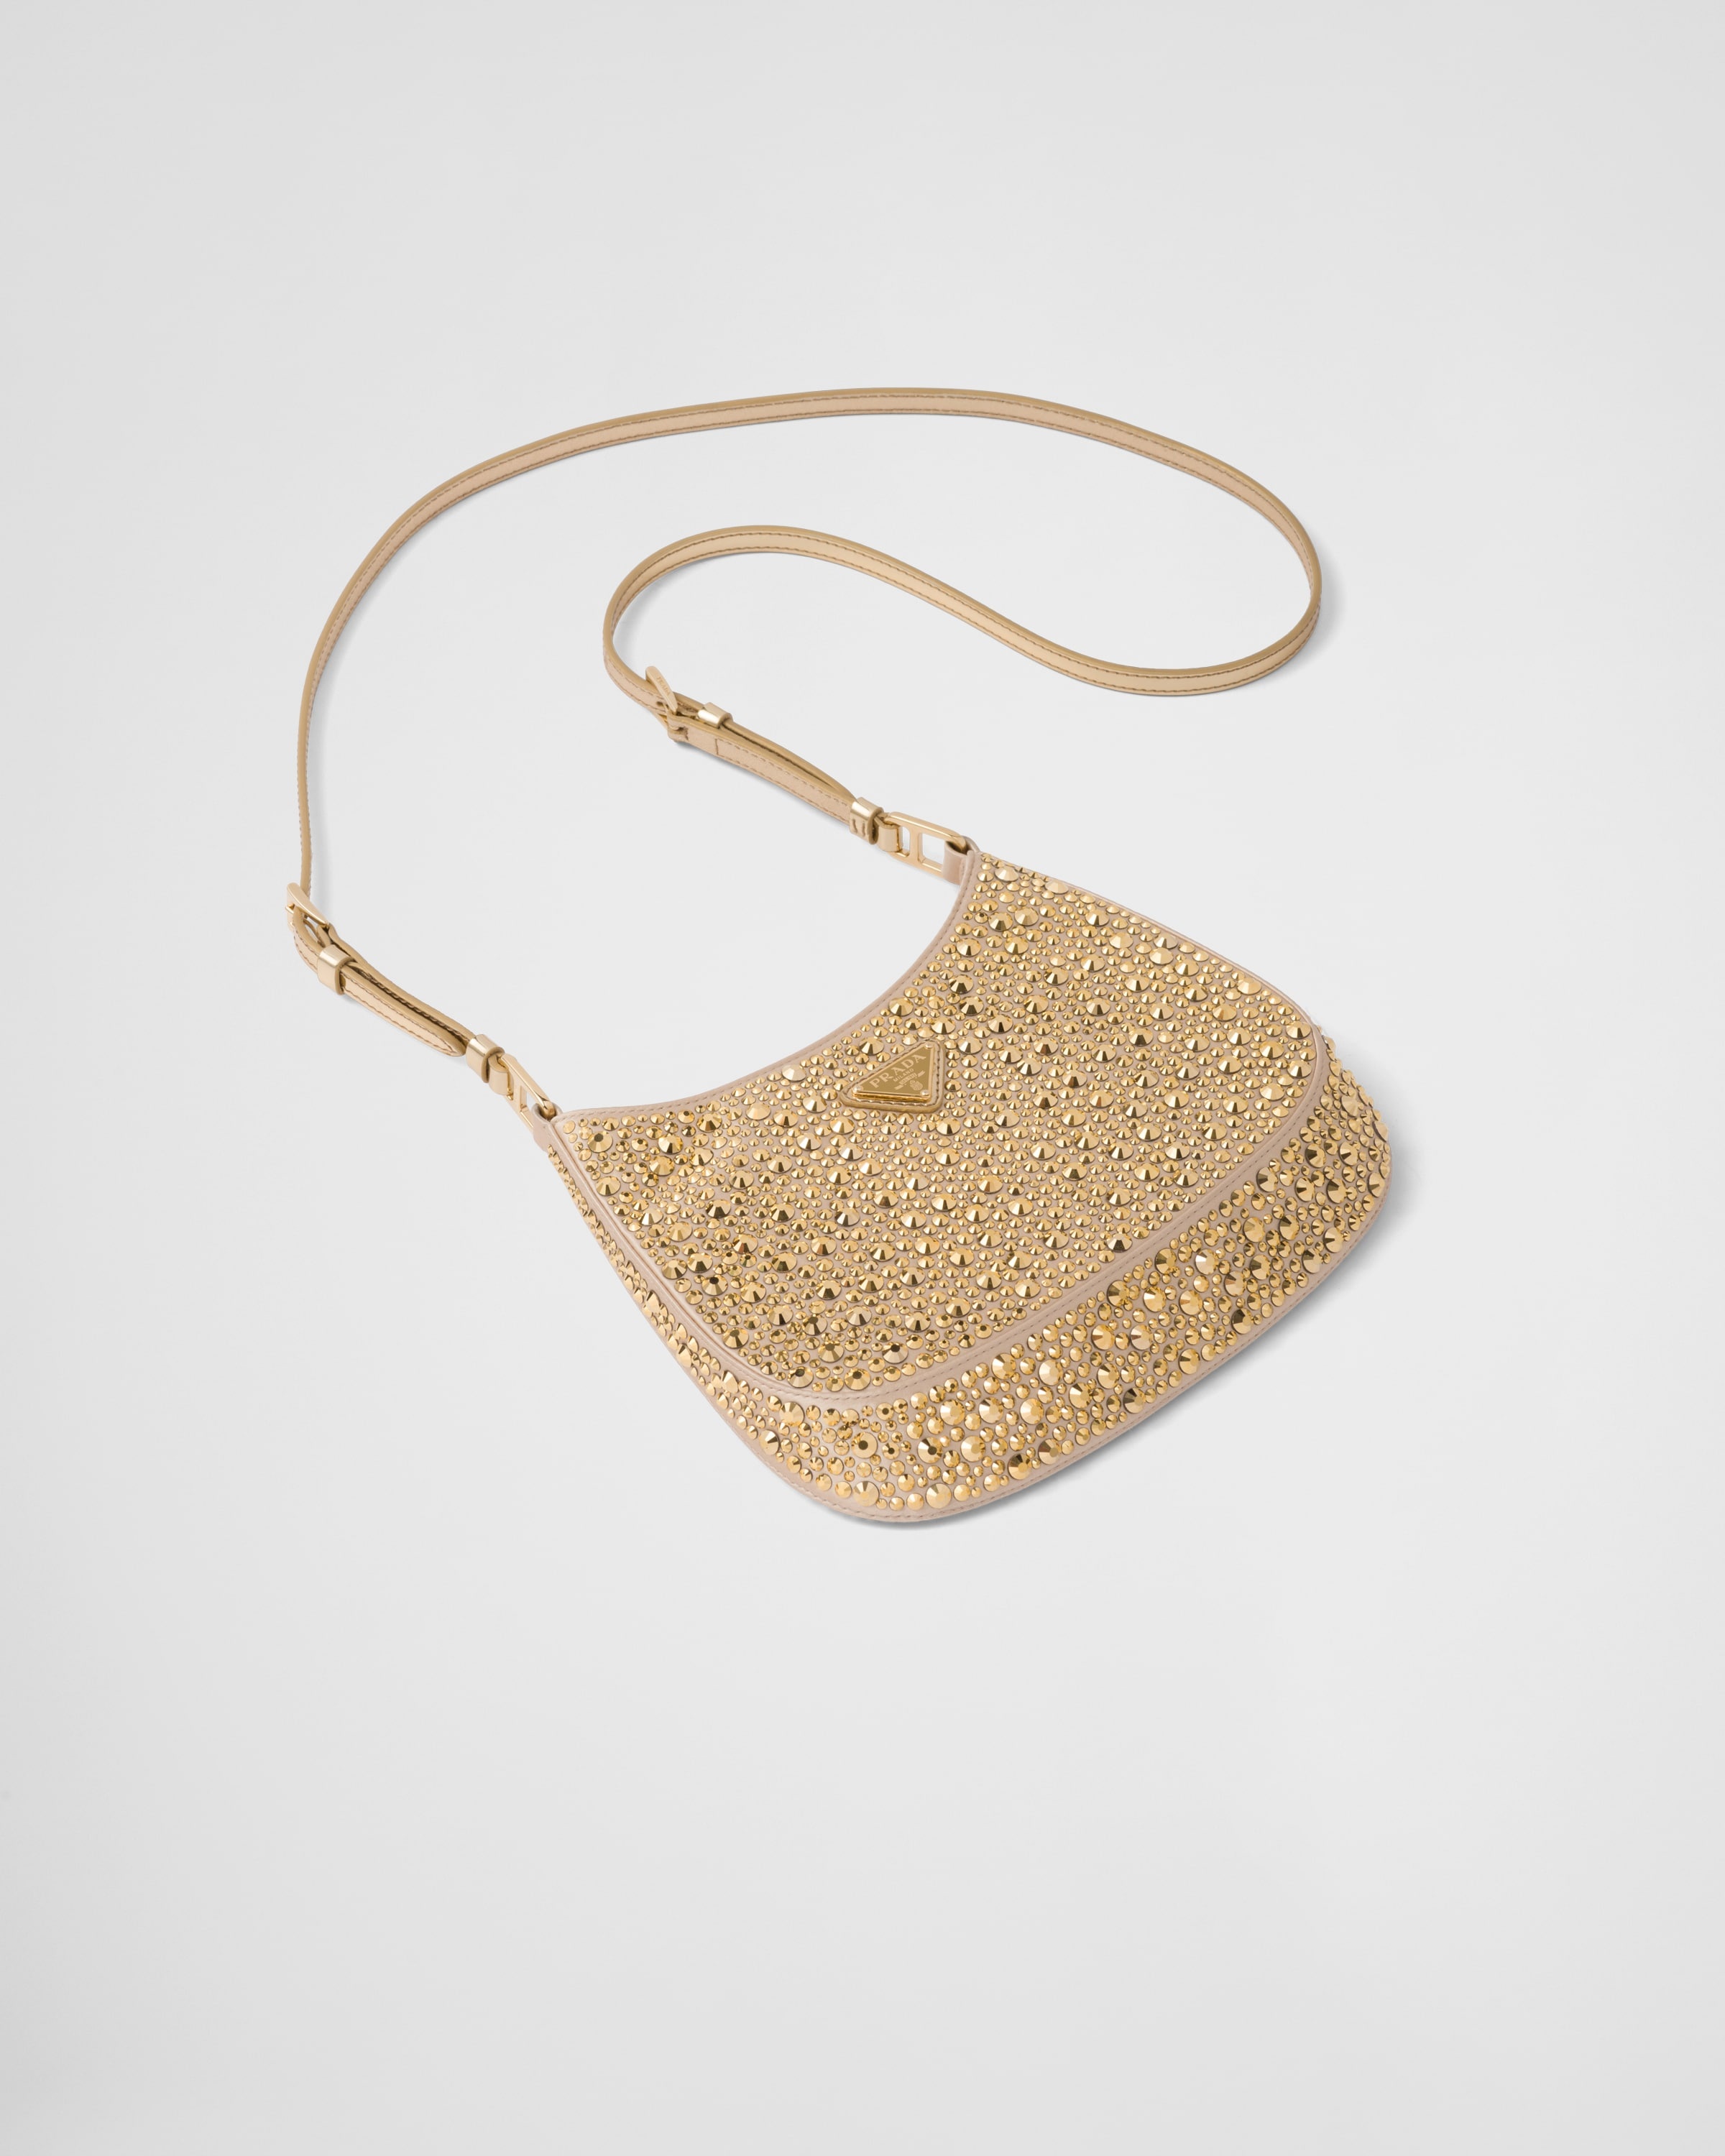 Prada Cleo satin bag with crystals - 3